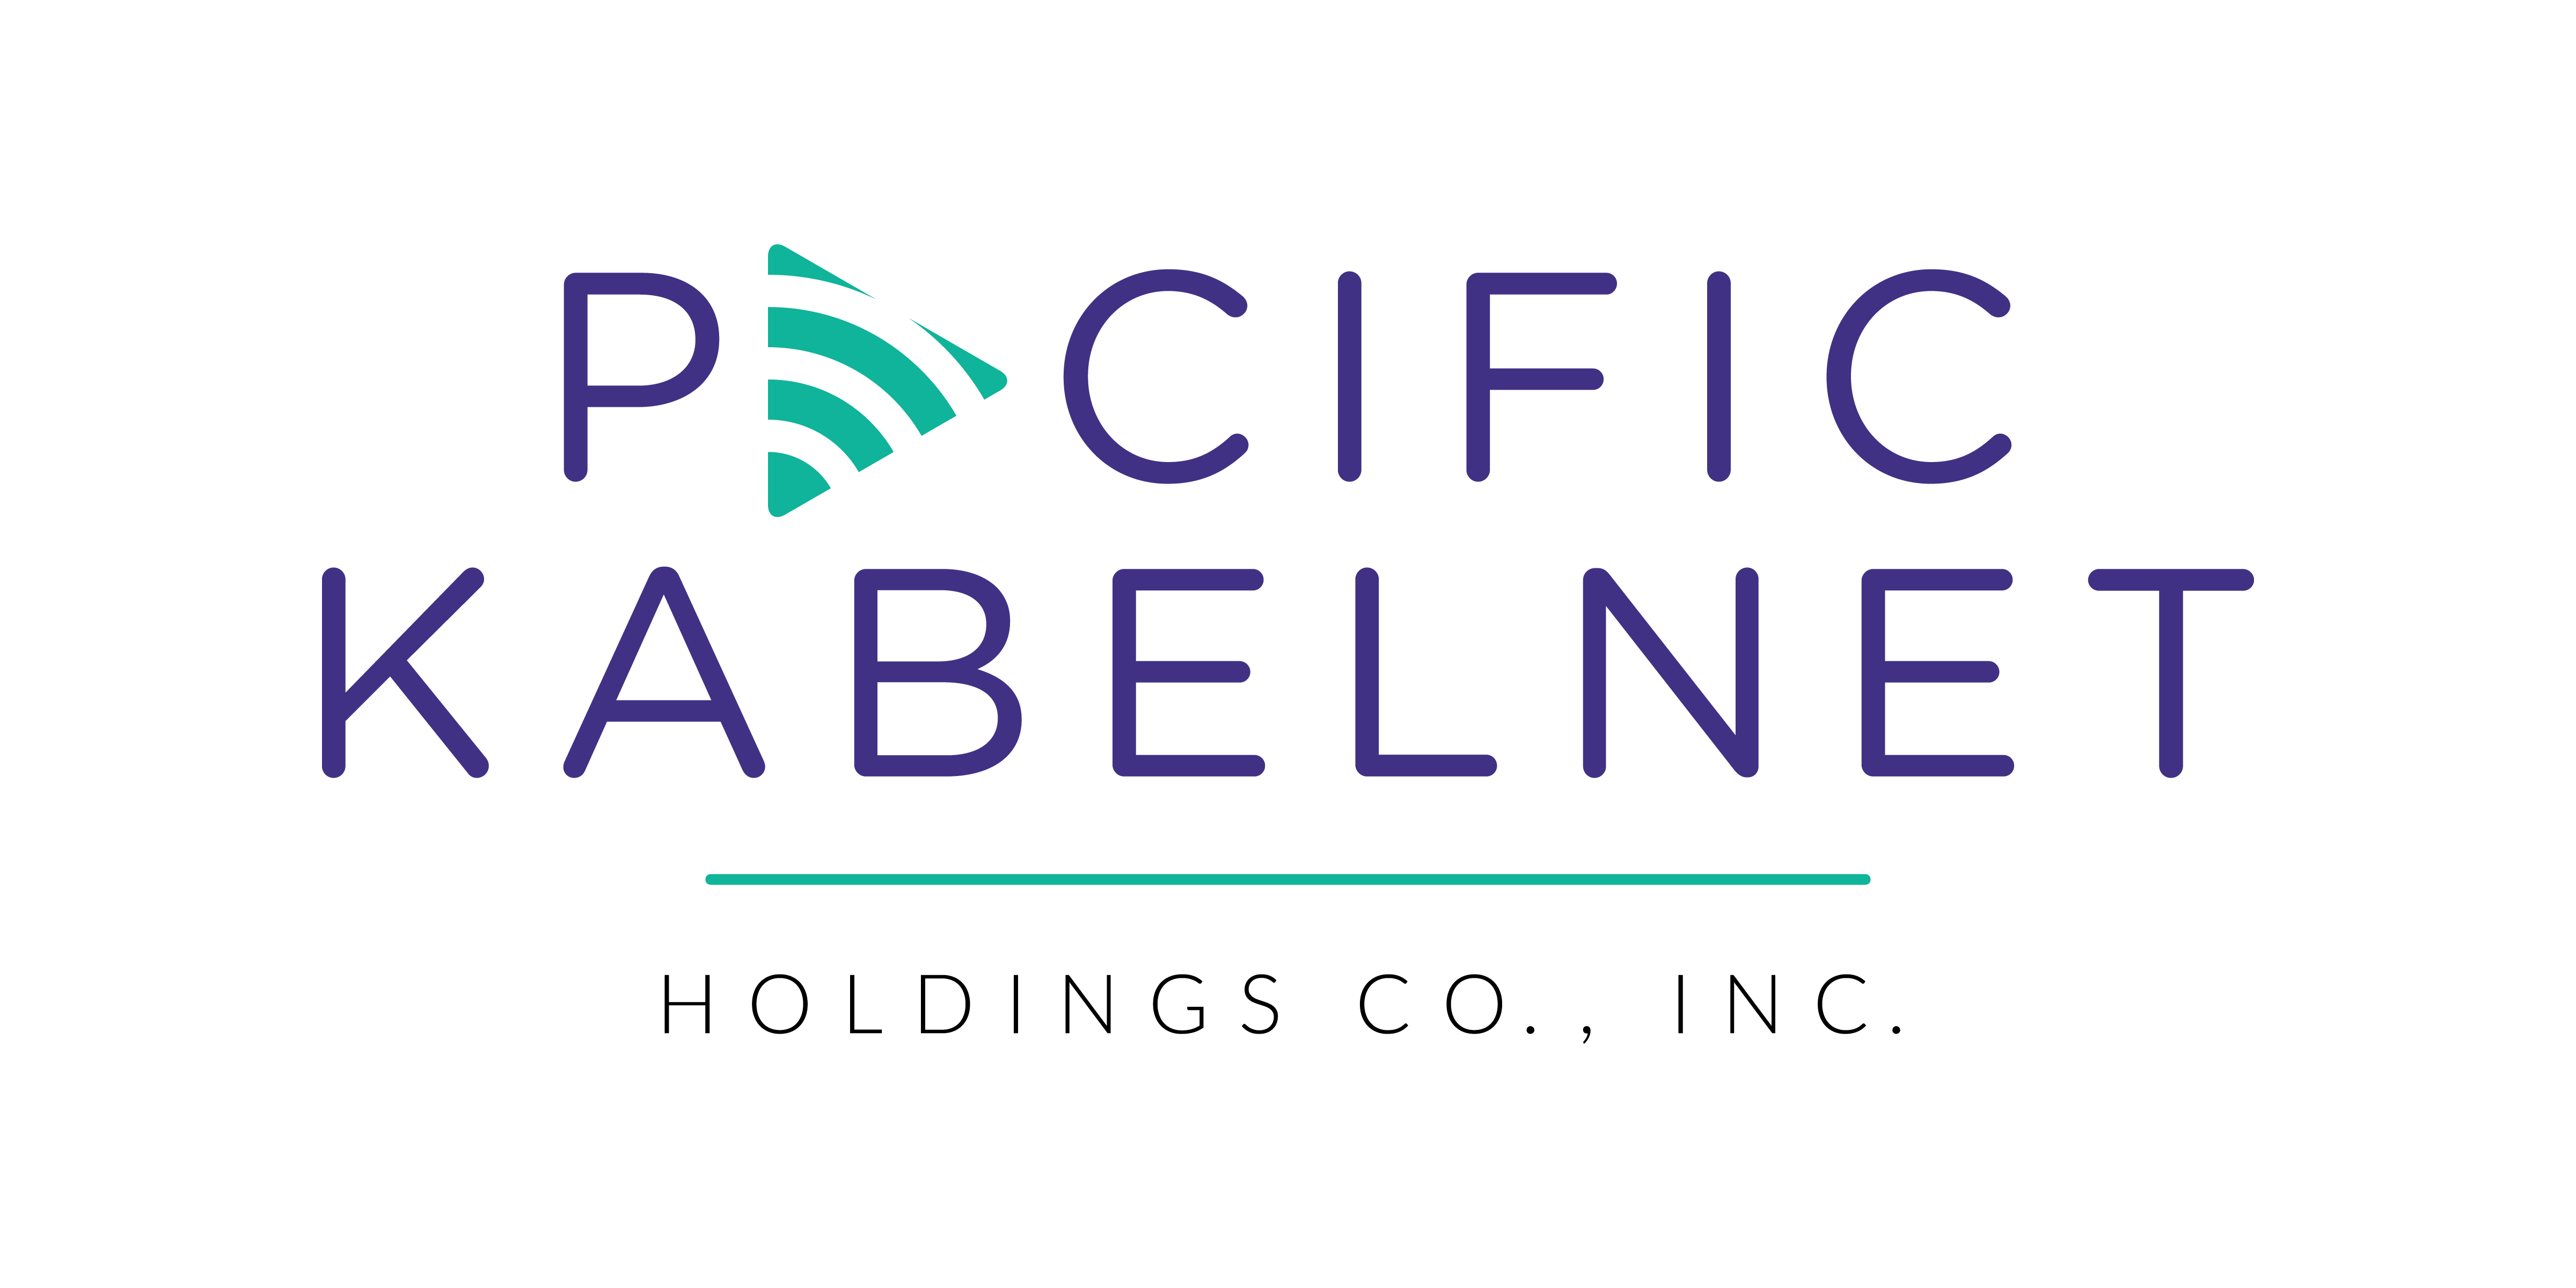 Pacific Kabelnet logo